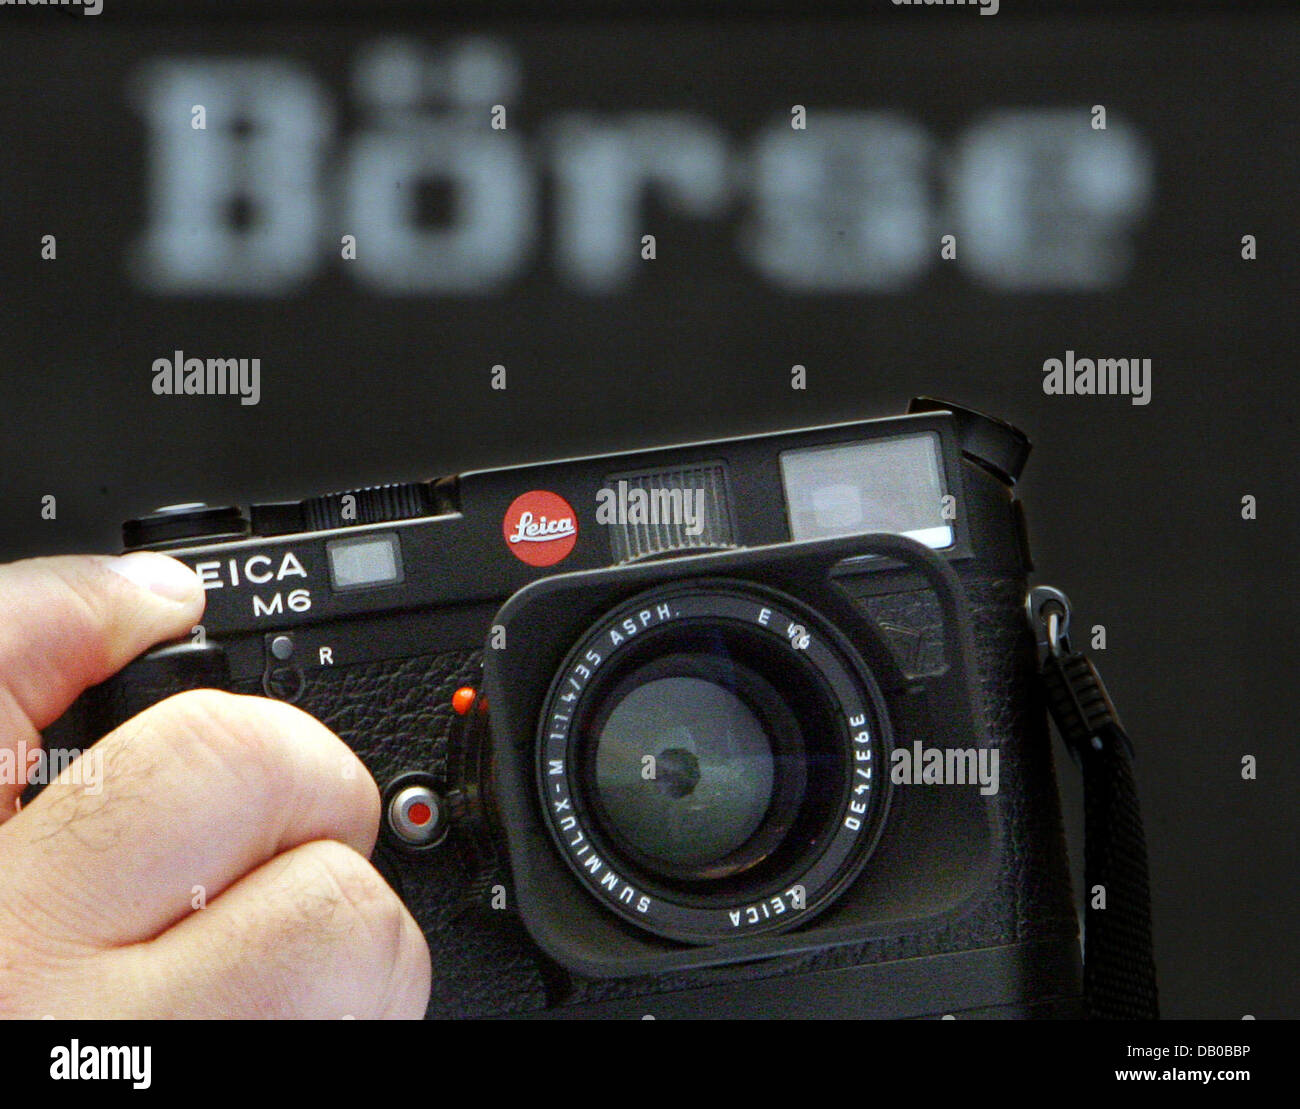 Un clásico tipo de cámara Leica M6 se muestra en la parte delantera del DAX gráfico de cotizaciones en la bolsa de valores de Frankfurt Main, Alemania, el 01 de agosto de 2007. Tradicional productor de cámara Leica está a punto de ser tomada de la bolsa en 2008. El propietario mayoritario de ACM tomará el control de la empresa completamente. Foto: Boris Roessler Foto de stock